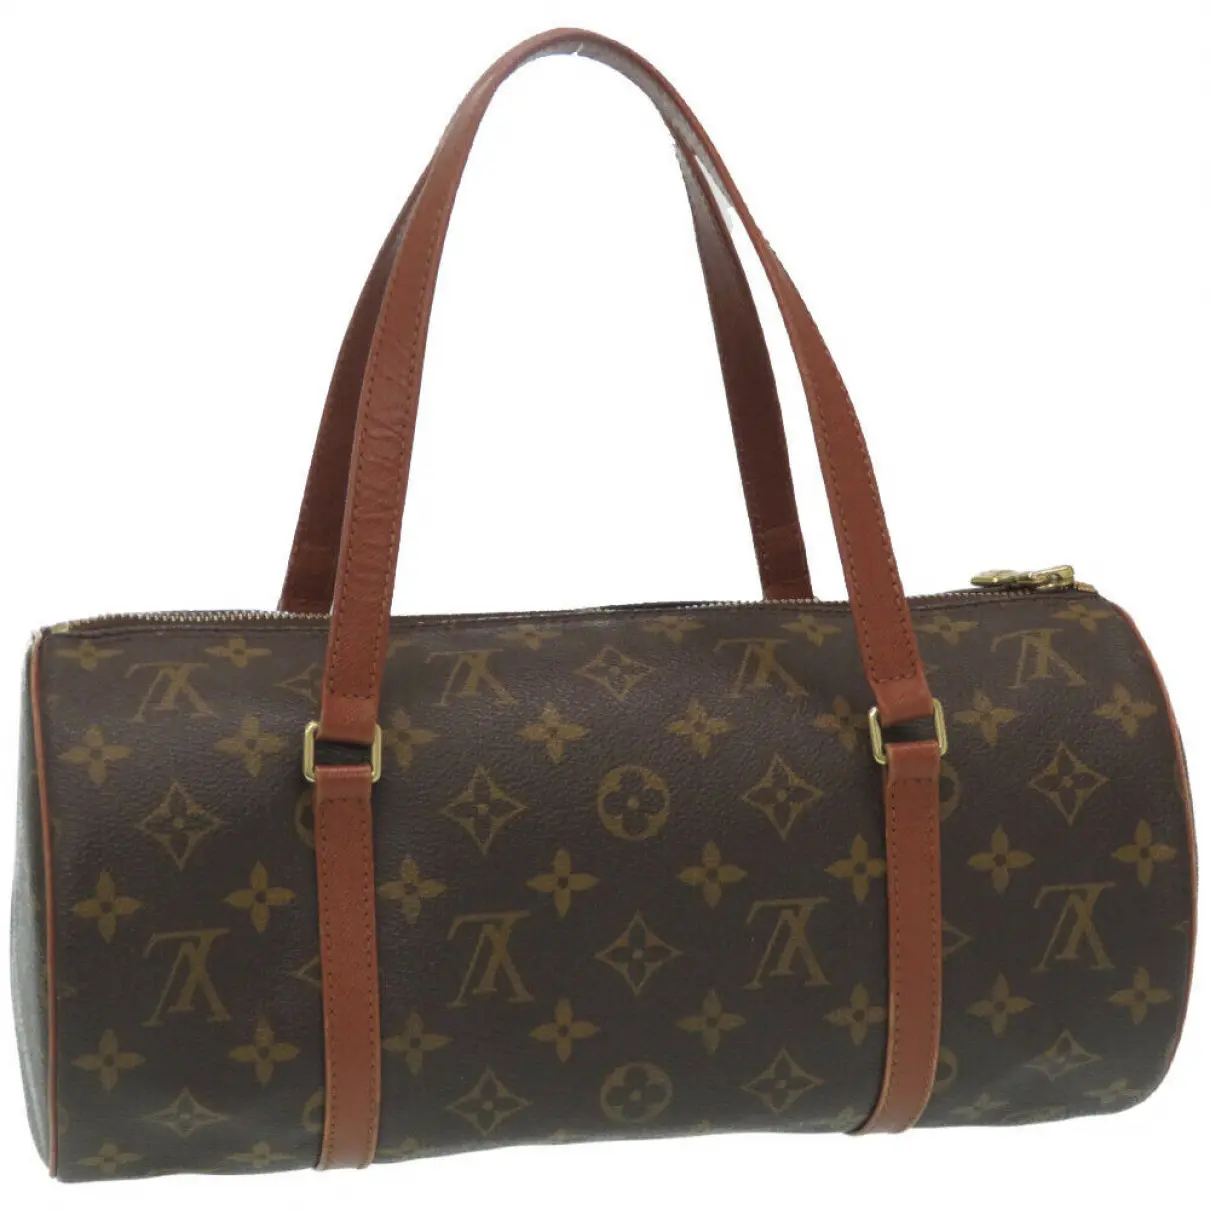 Buy Louis Vuitton Papillon cloth handbag online - Vintage